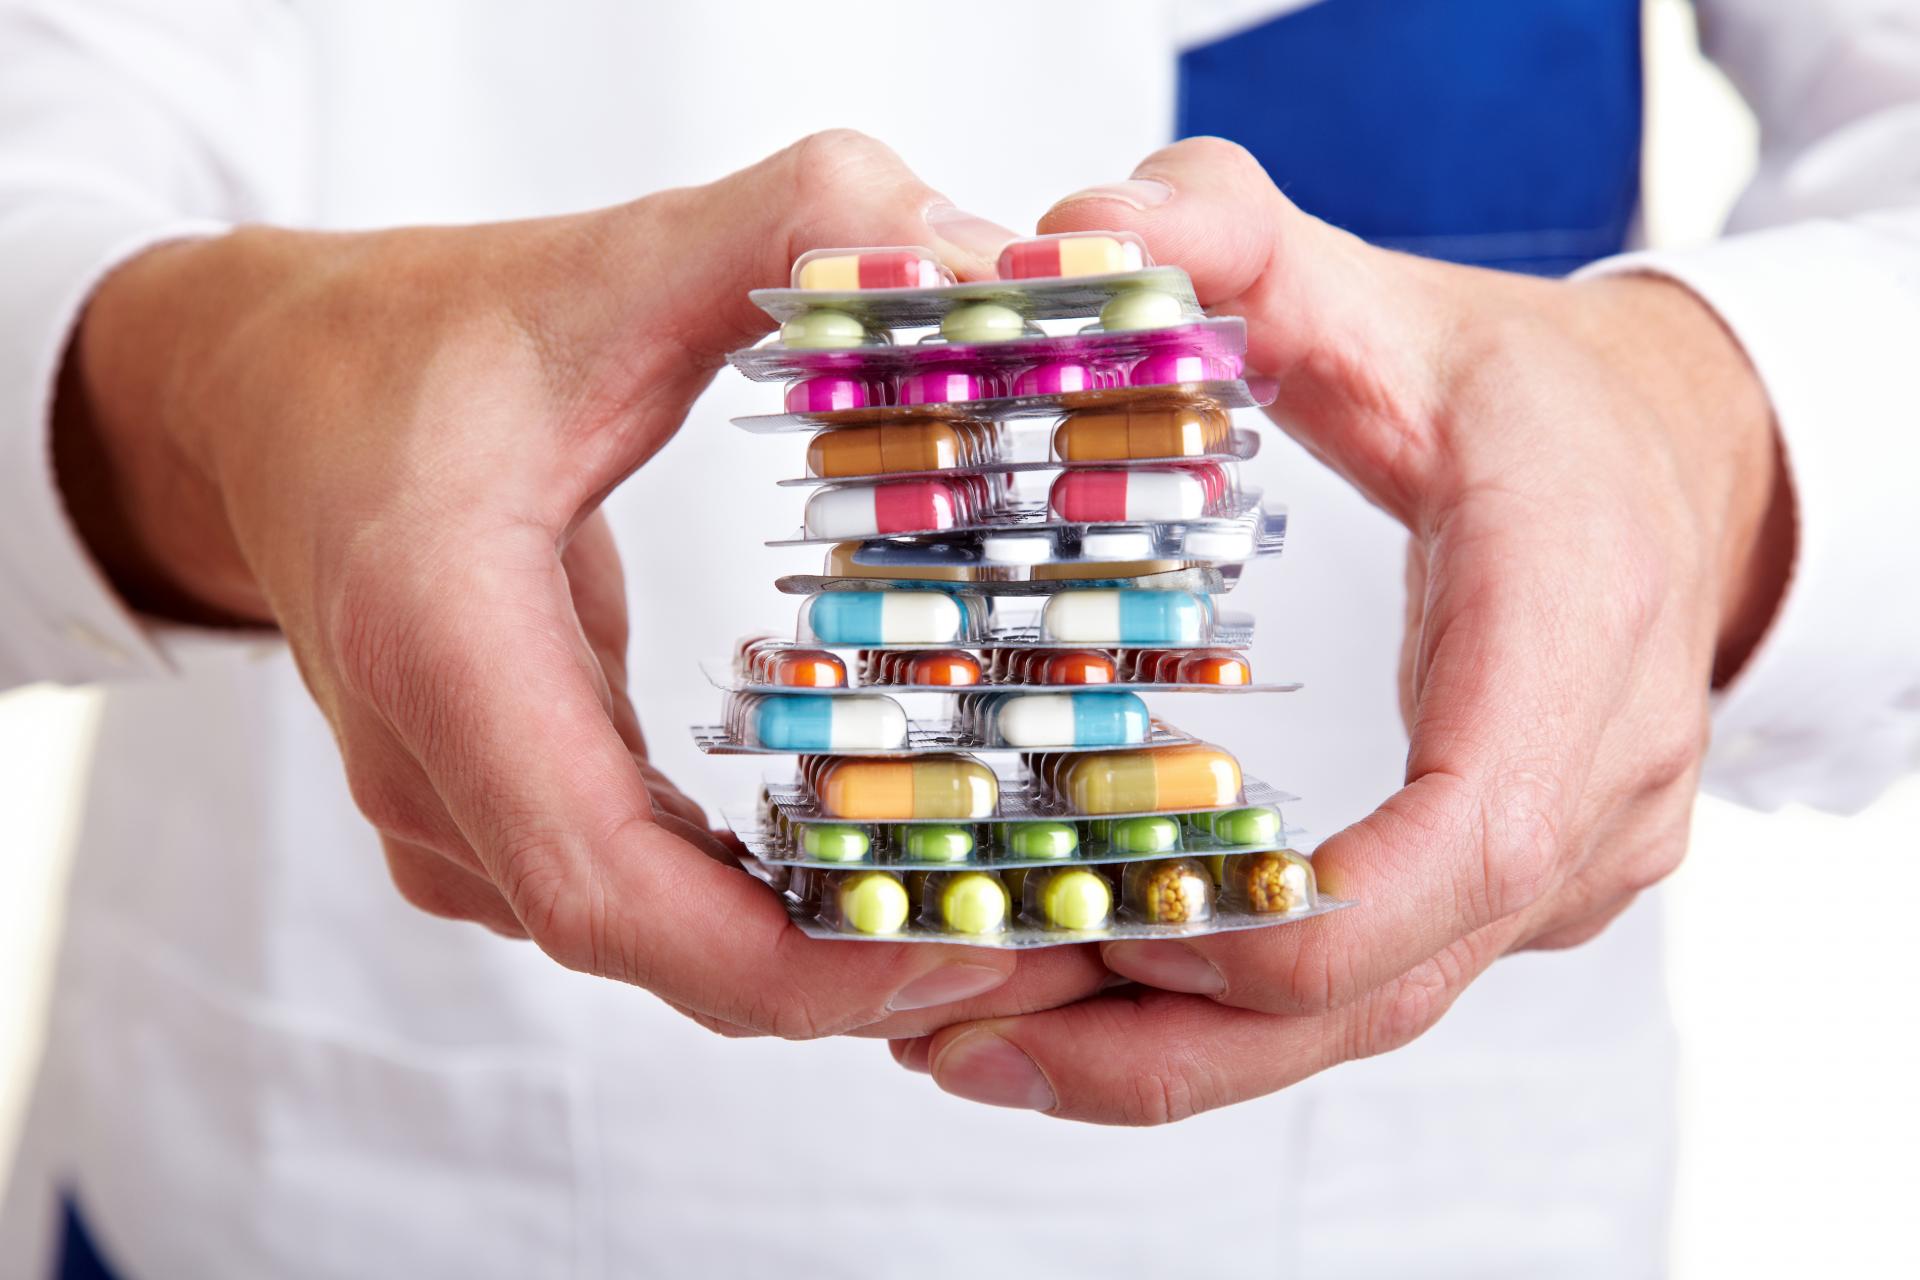 Lieky by sa nemali kupovať v neprimeranom množstve do zásoby